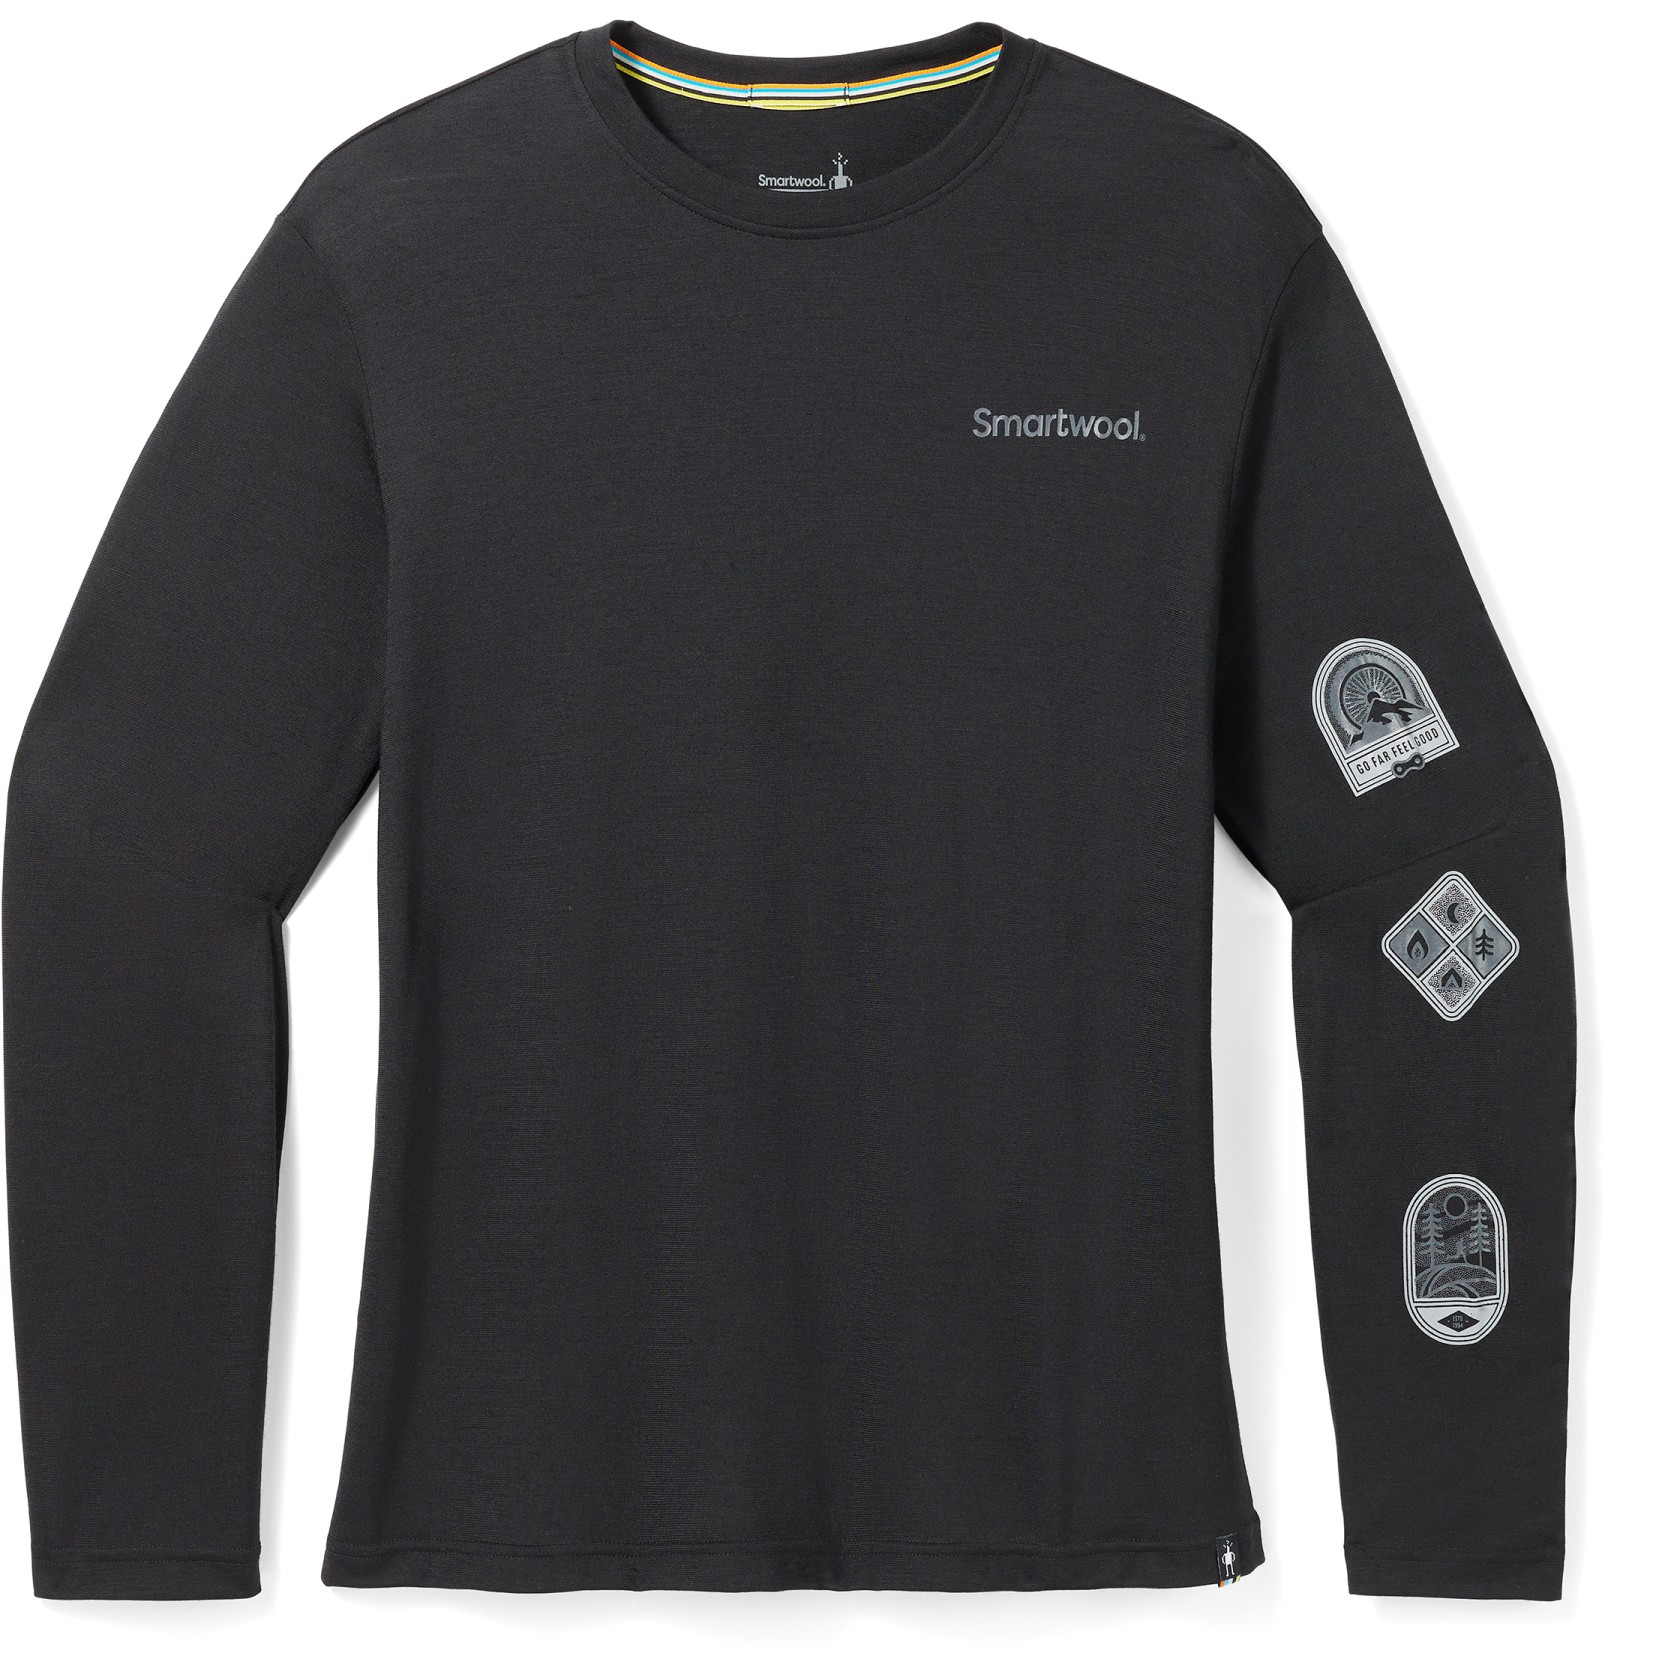 Produktbild von SmartWool Outdoor Patch Graphic Langarmshirt - 001 schwarz